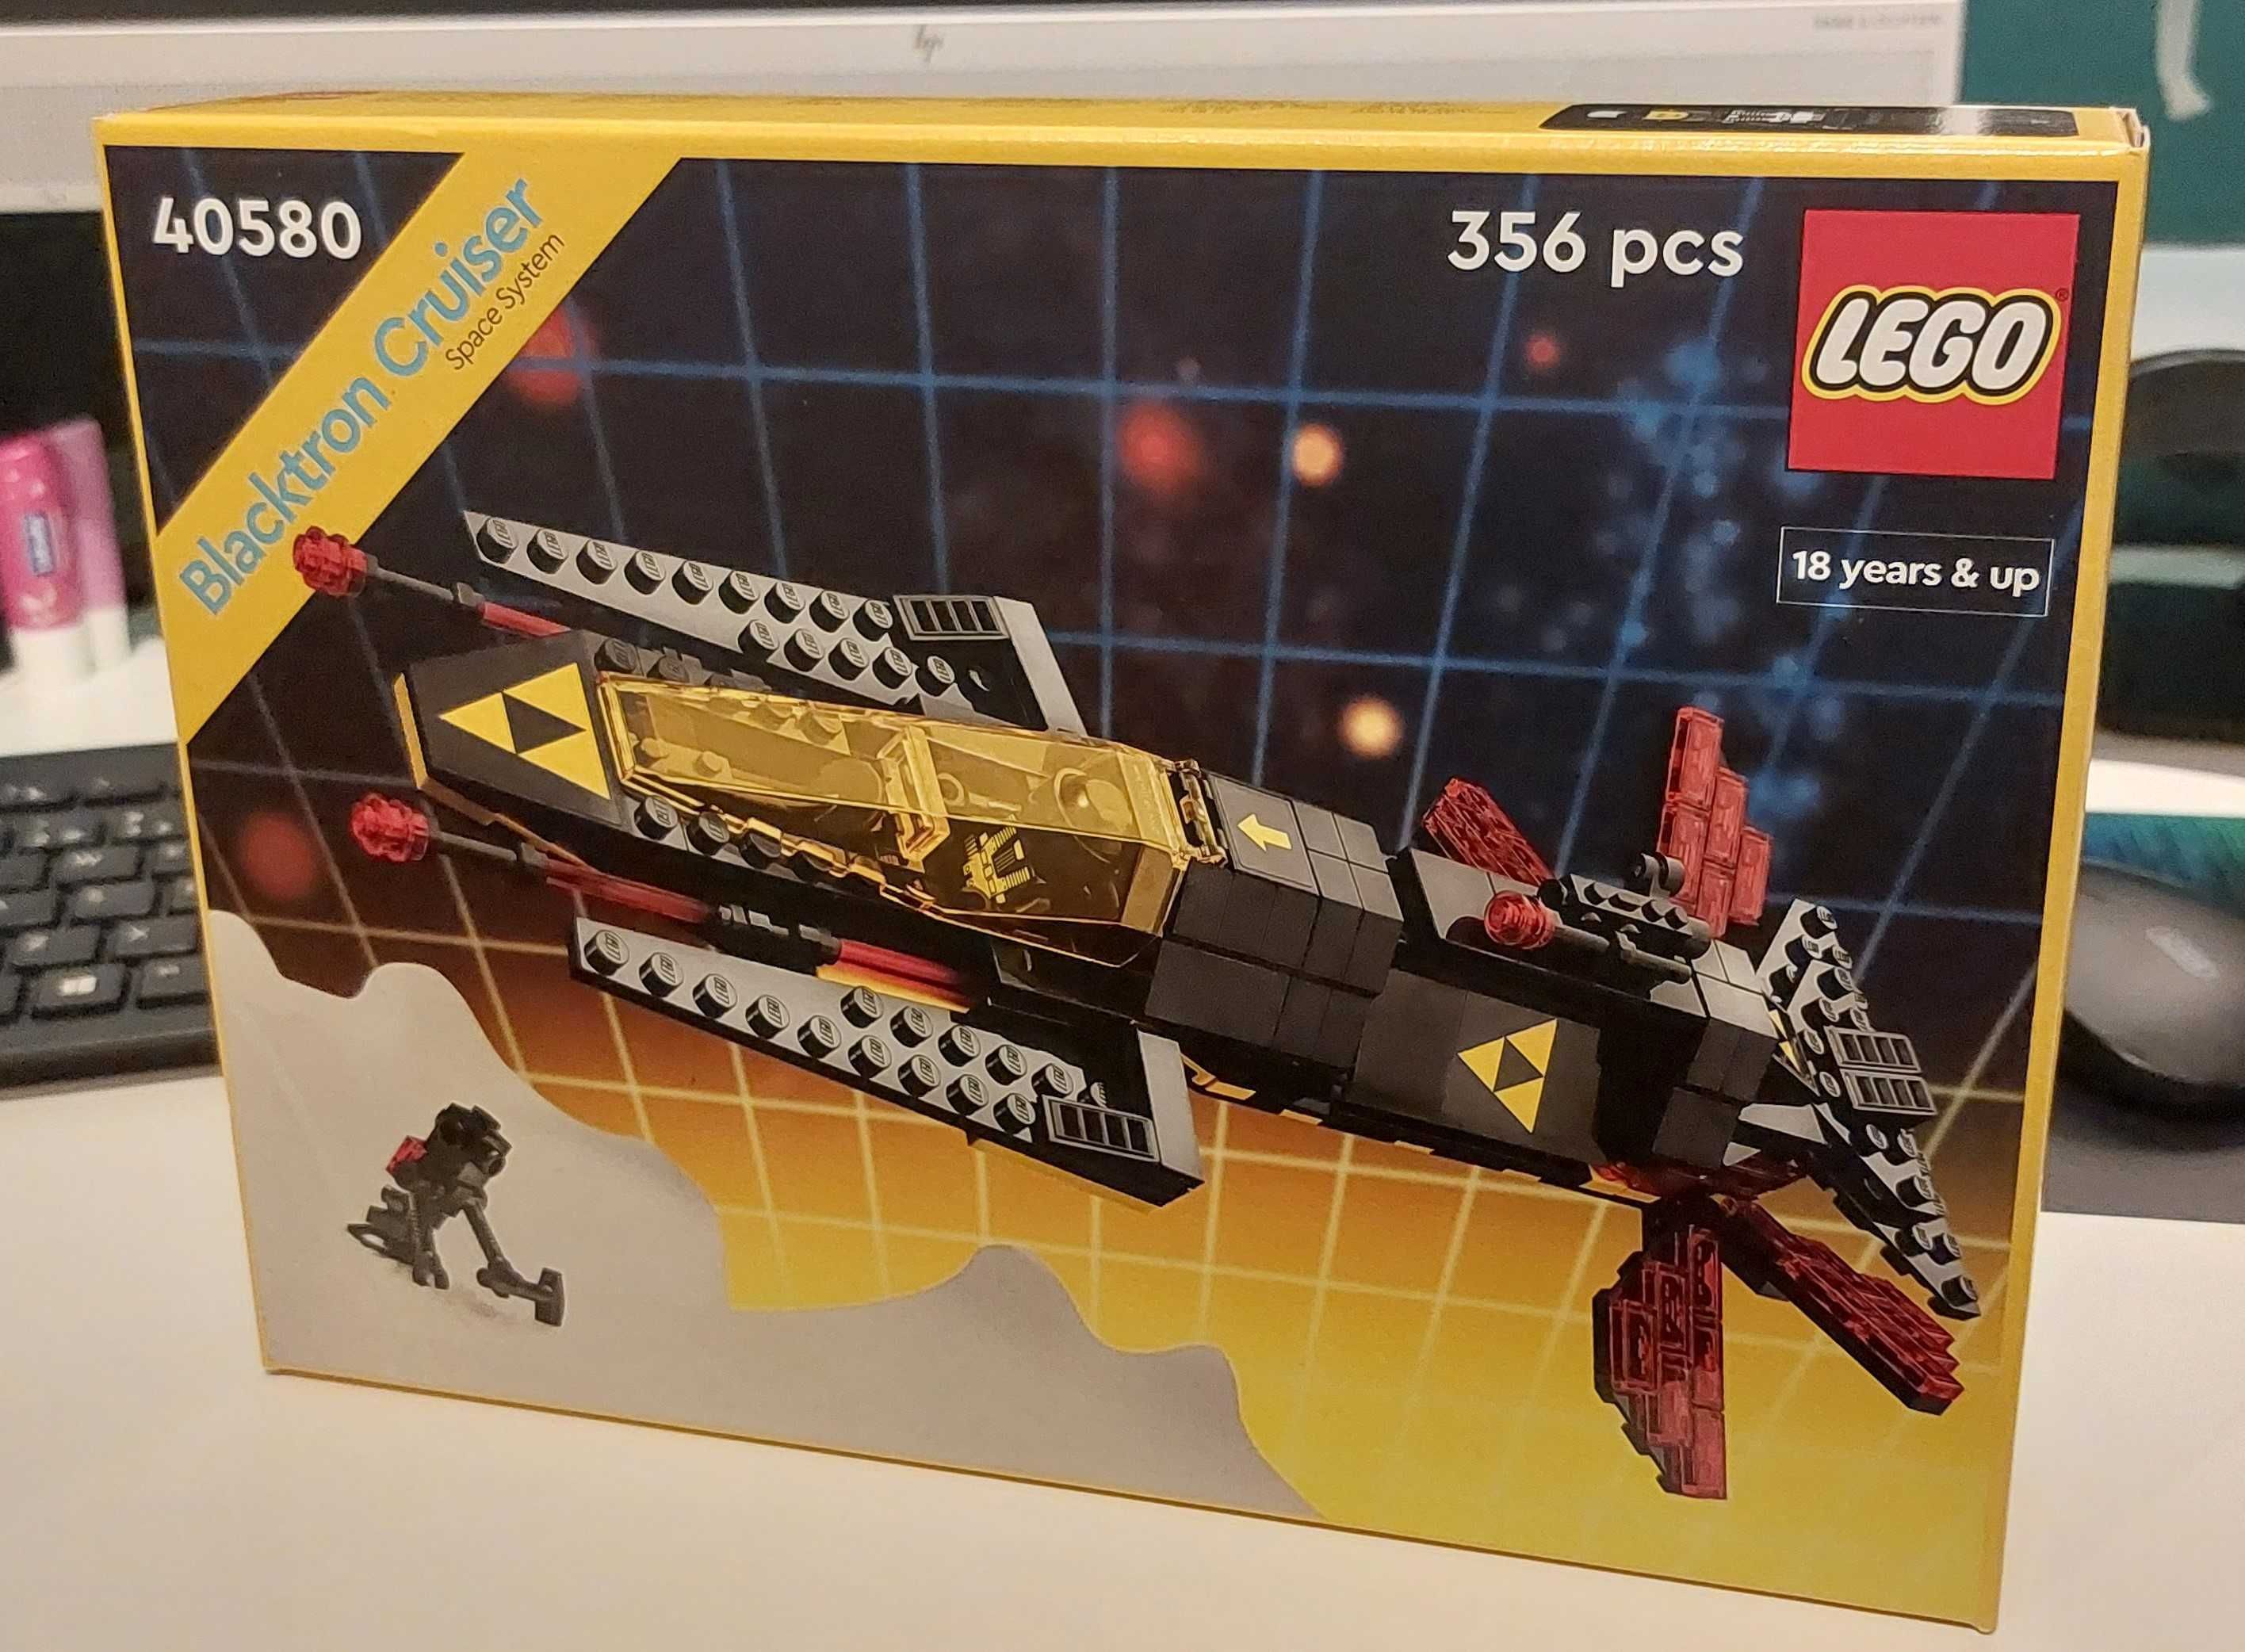 Lego 40580 Blacktron Cruiser